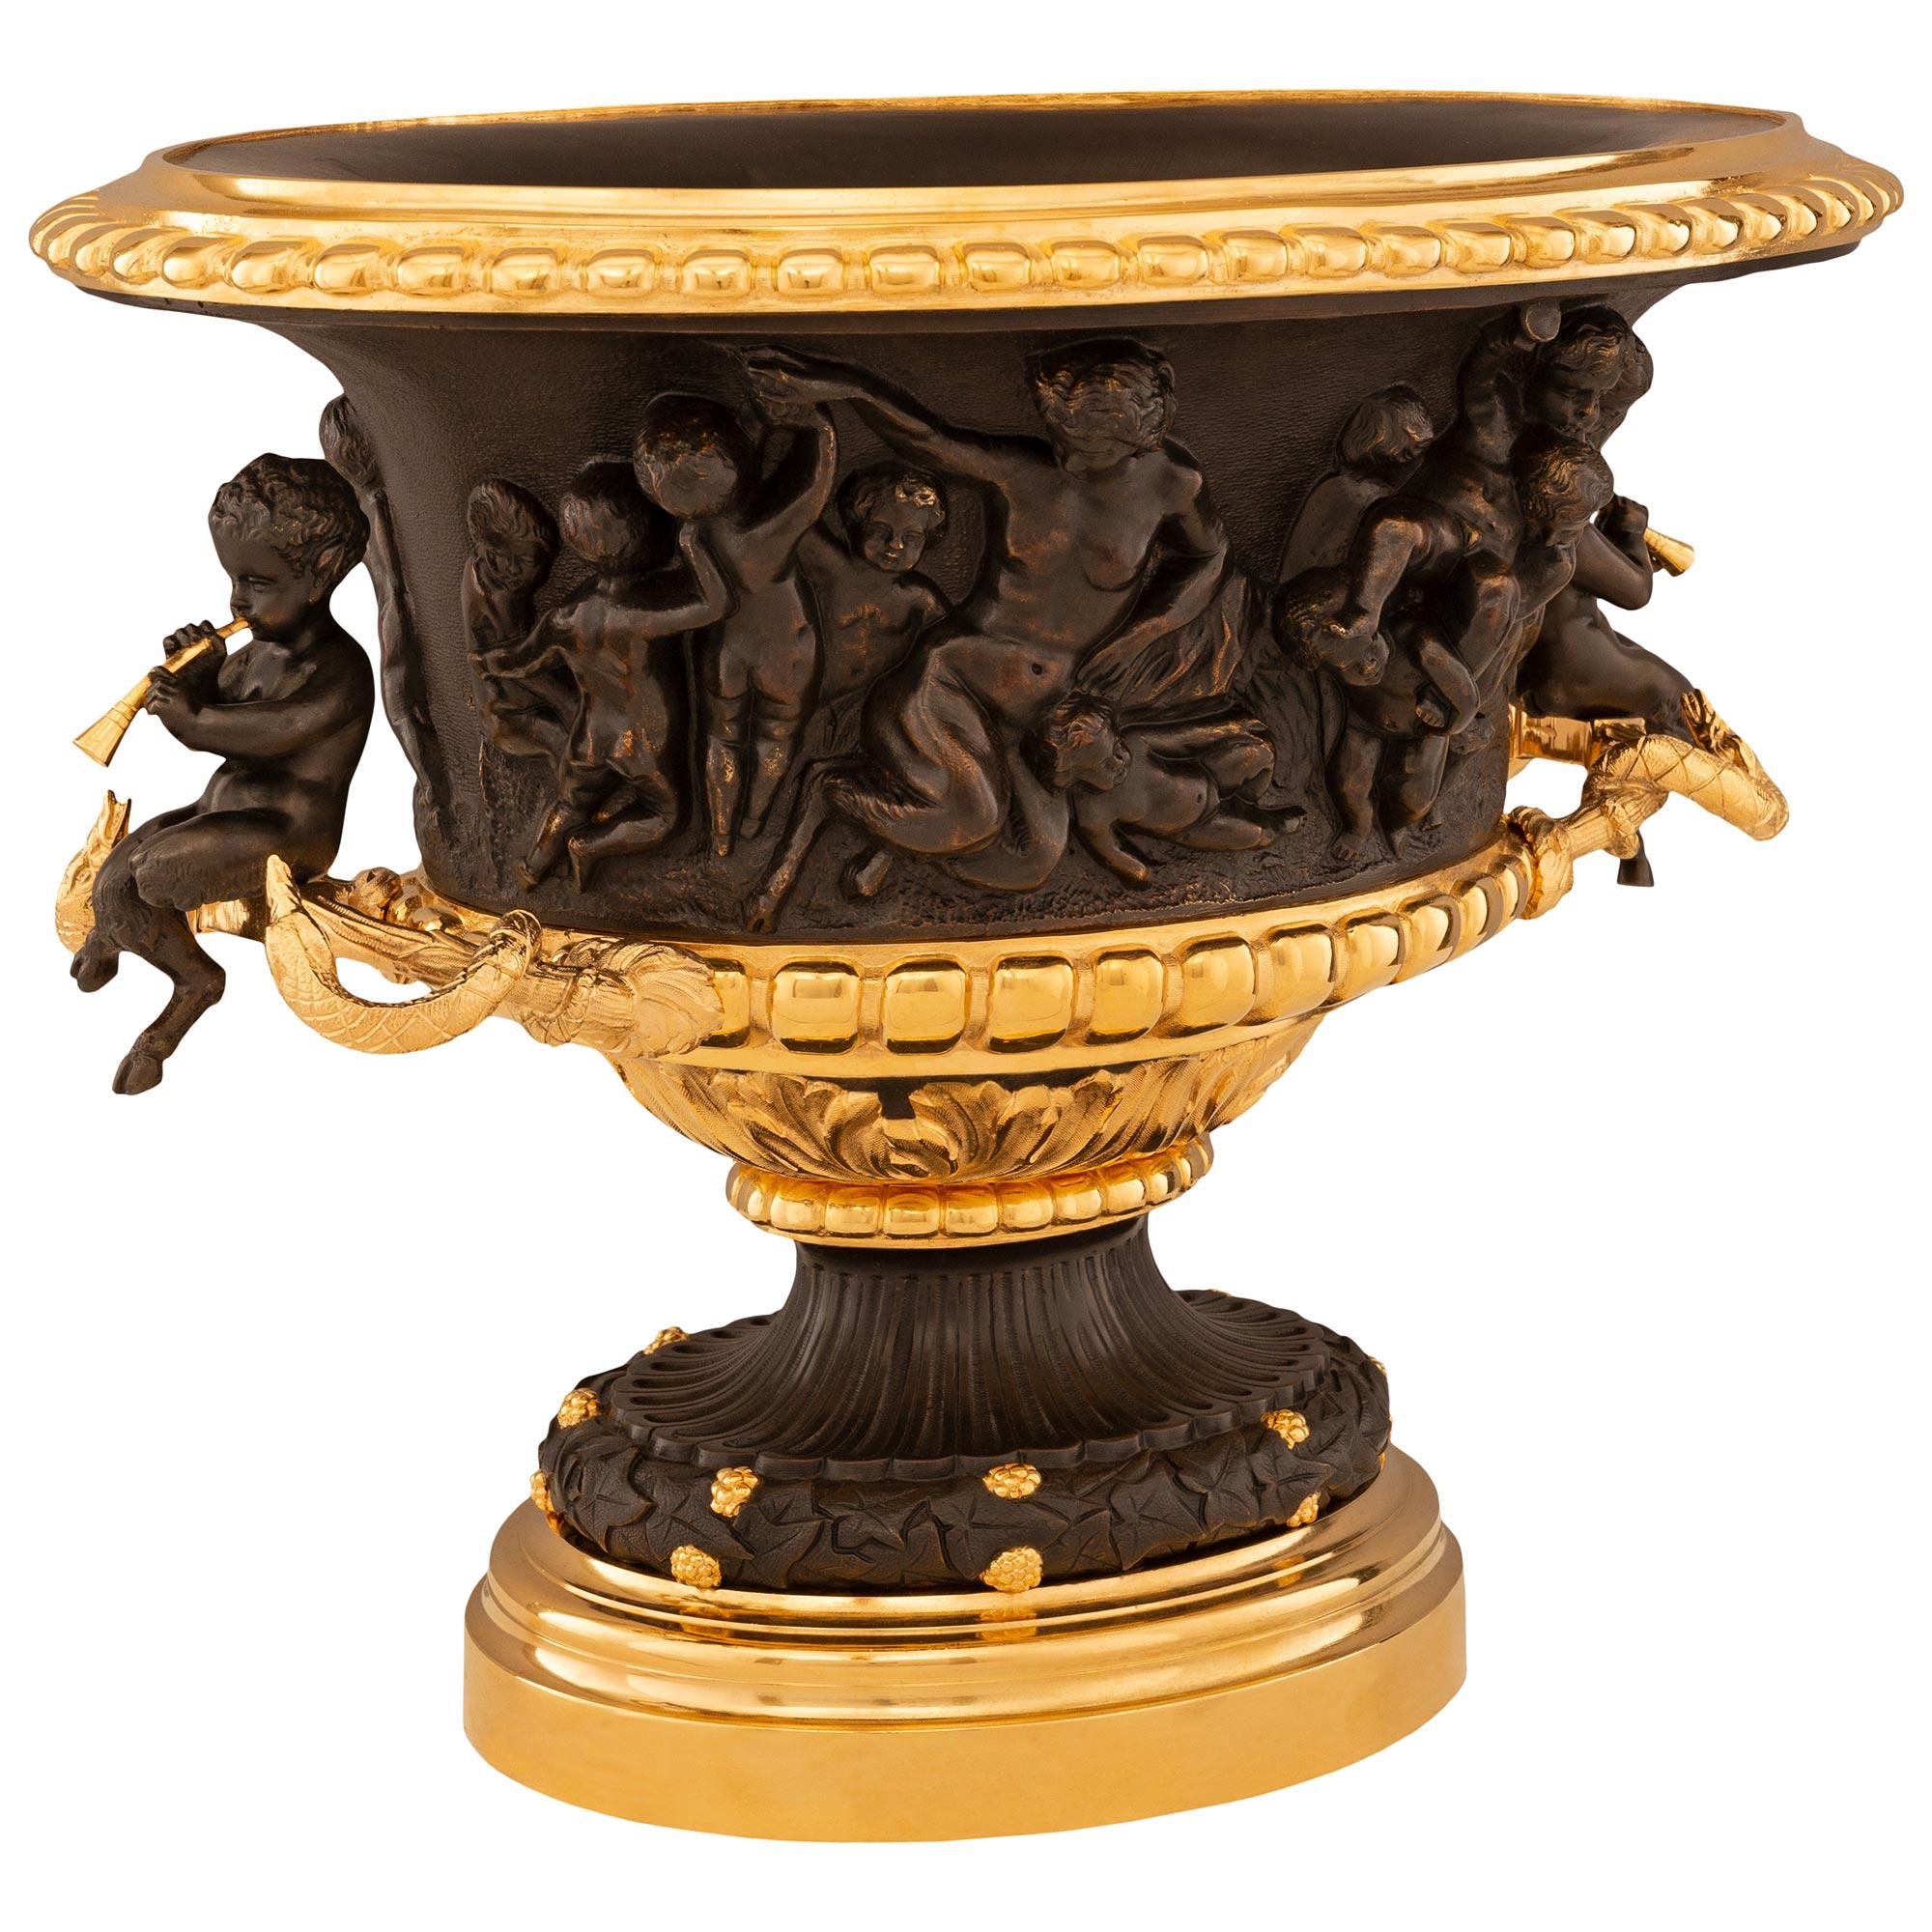 Un élégant centre de table/urne en bronze patiné et bronze doré de la Renaissance française du XIXe siècle de grande qualité. Cette urne magnifiquement détaillée est surmontée d'une base circulaire en bronze doré marbré et à gradins. La base en